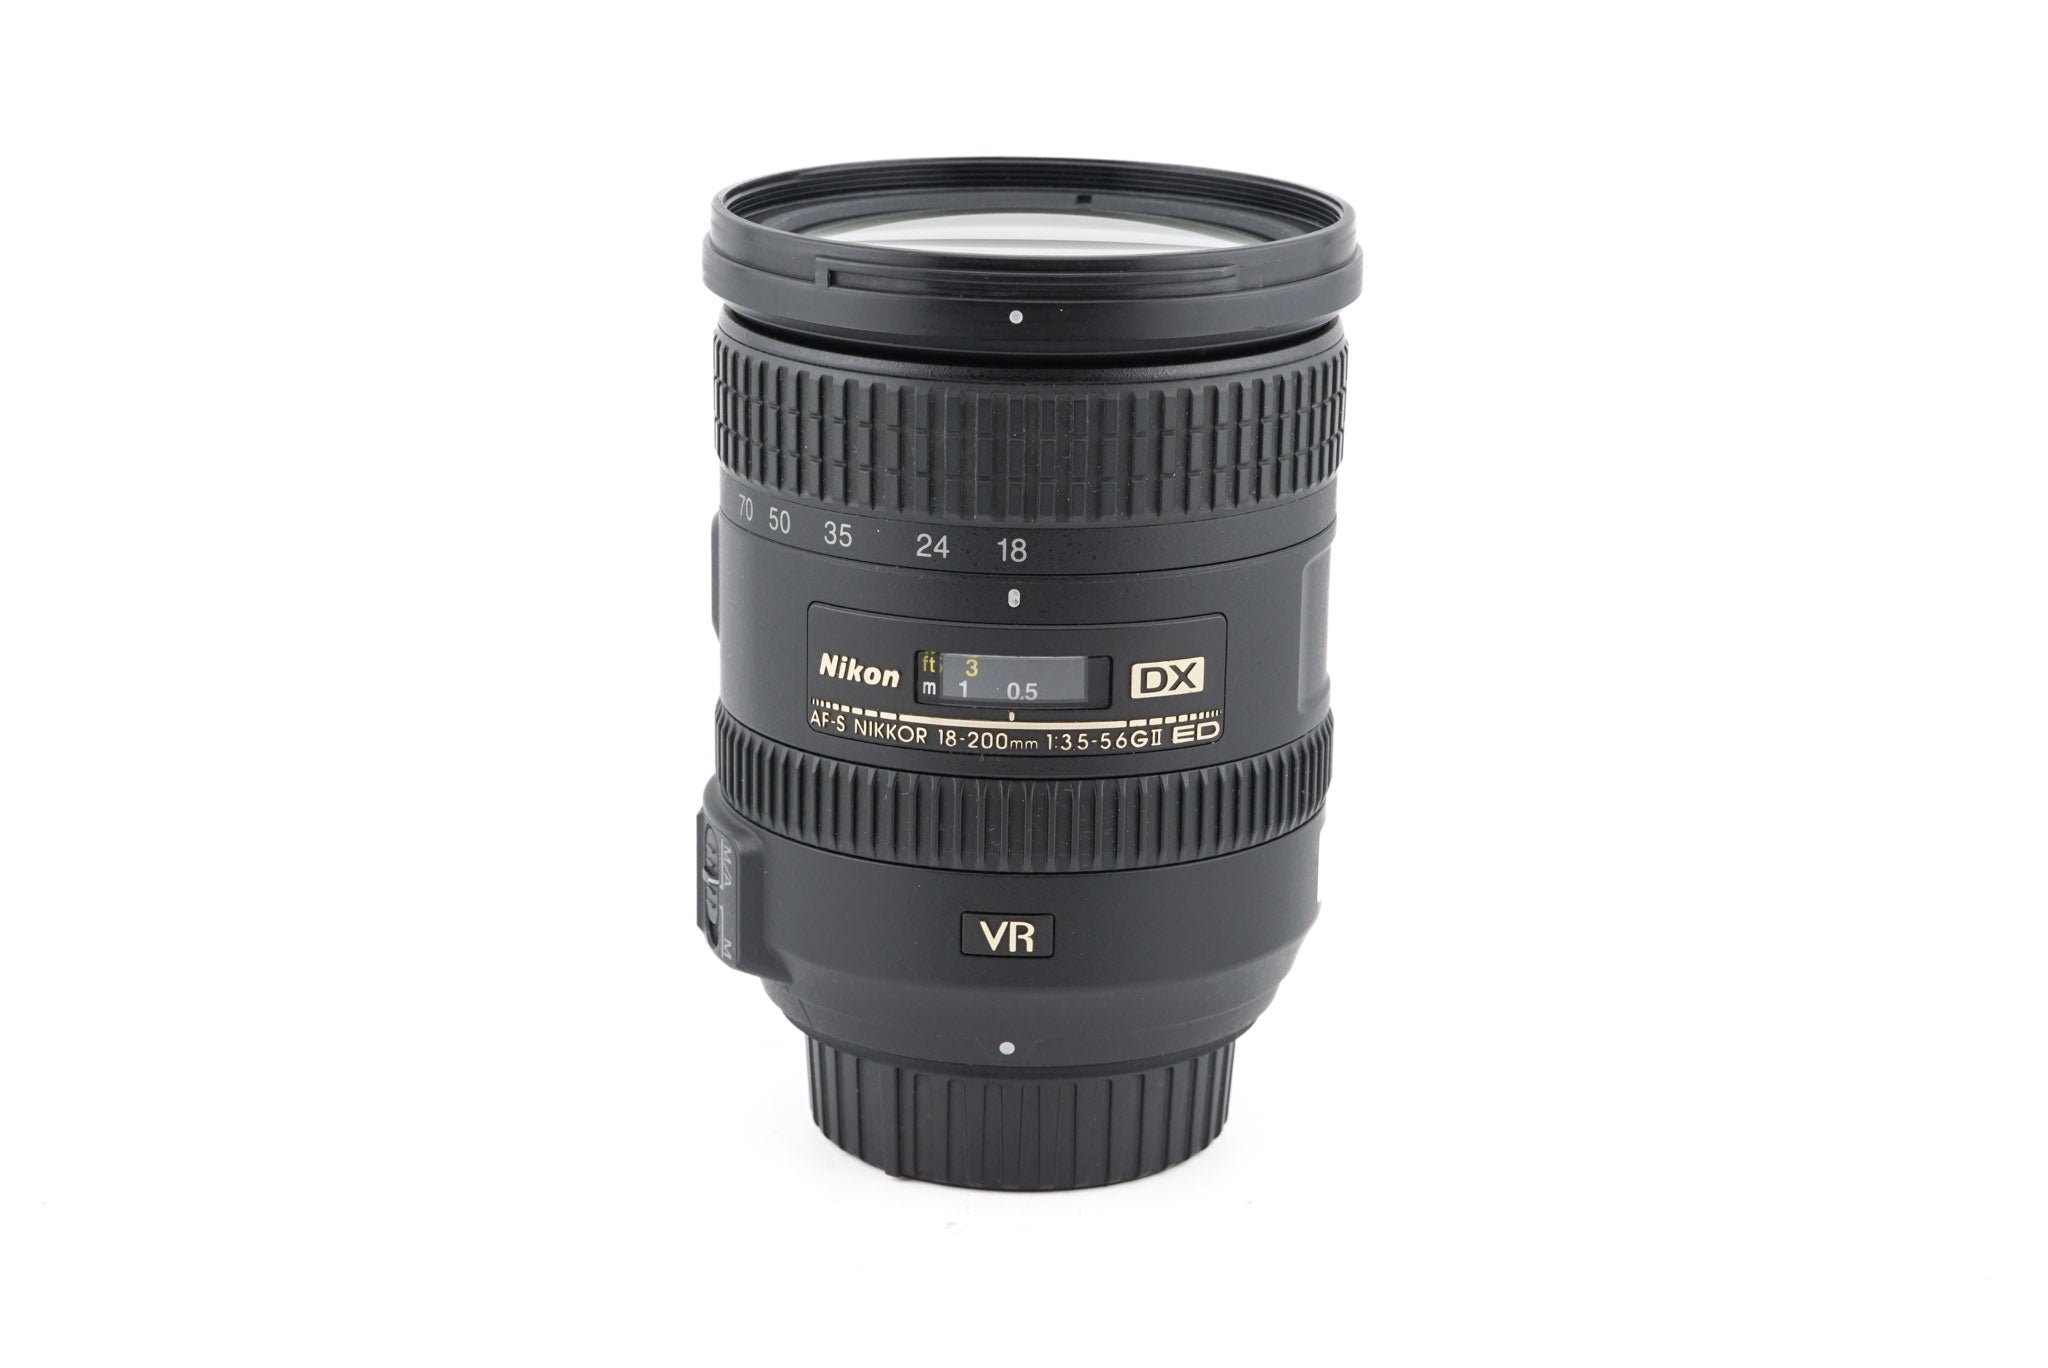 Nikon 18-200mm f3.5-5.6 G ED VR II AF-S Nikkor - Lens